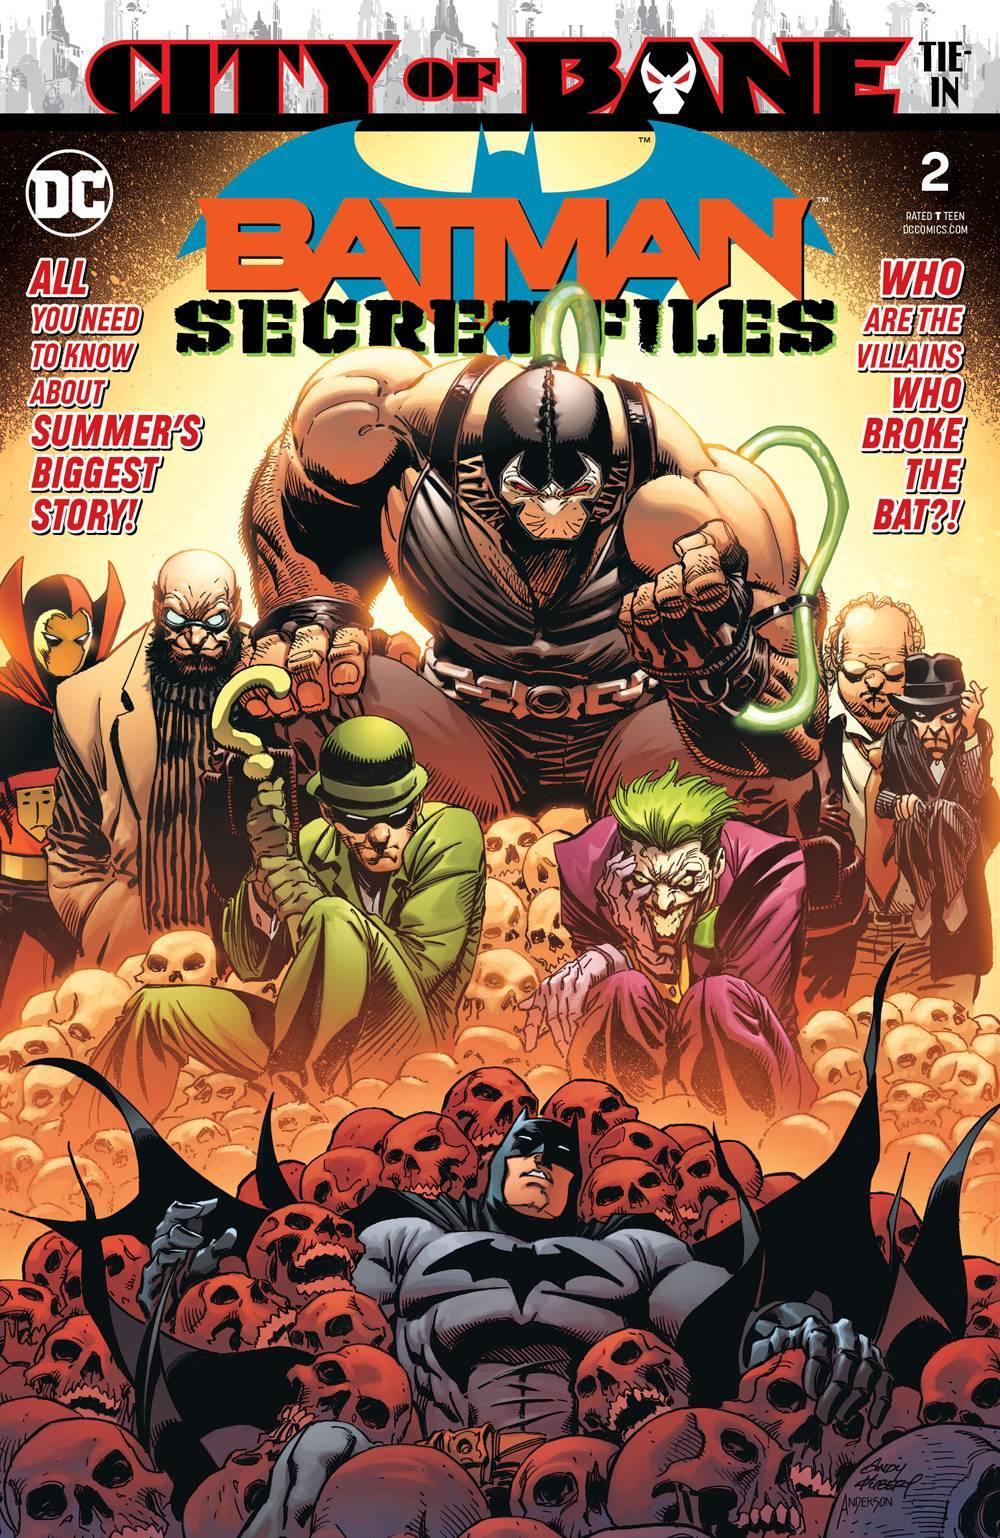 BATMAN SECRET FILES VOL 2 #2 - Kings Comics